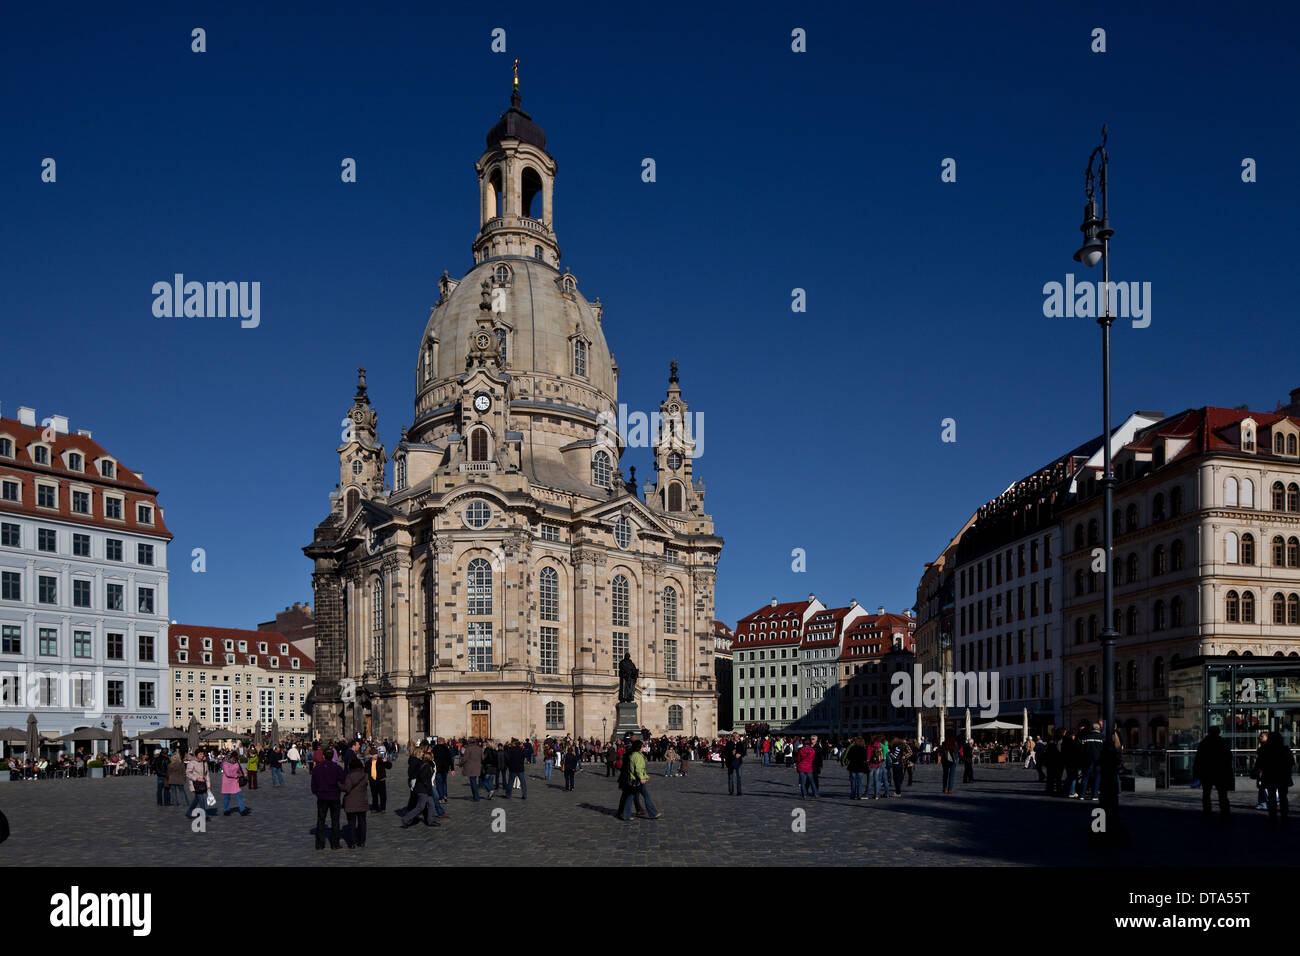 A Dresda, Frauenkirche am Neumarkt Foto Stock